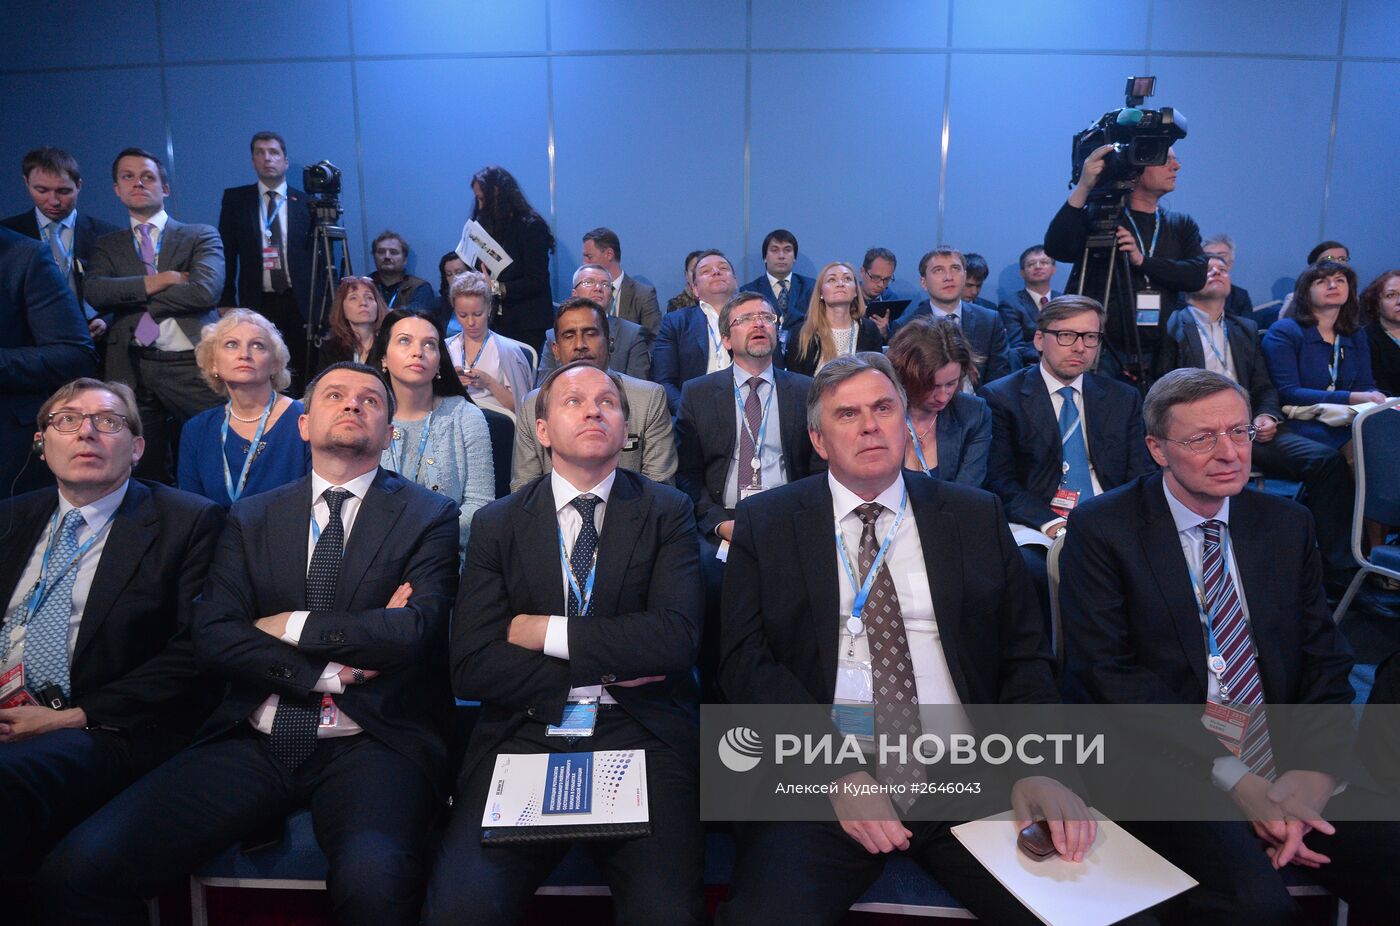 Панельная сессия "Энергоинтеграция Европы, России и Азии - безграничные возможности" в рамках ПМЭФ 2015